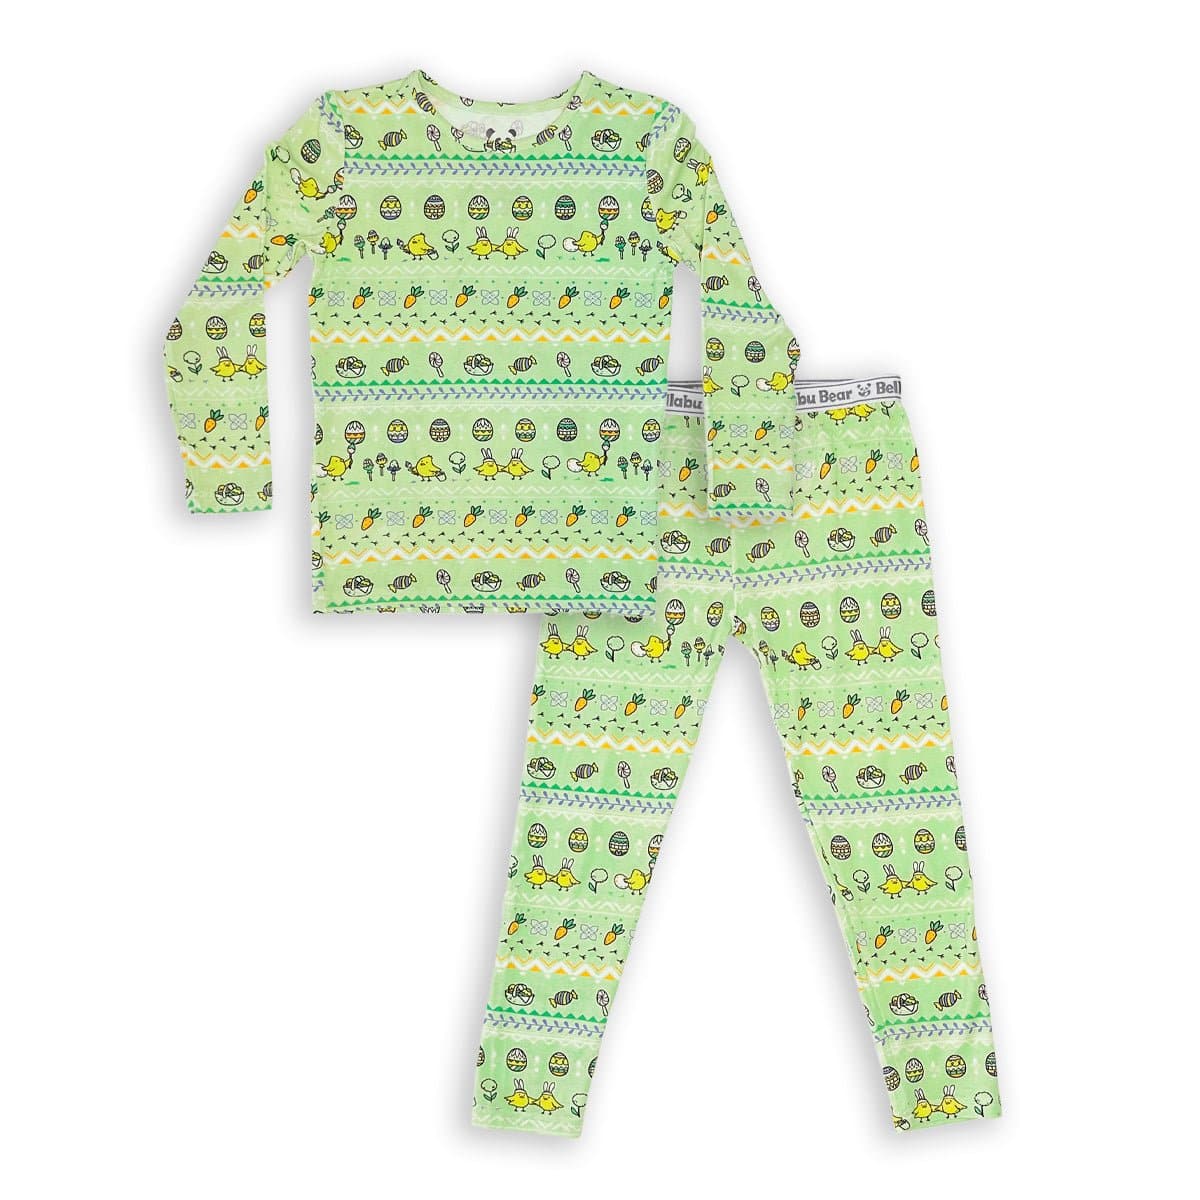 Bamboo Kids Long Sleeve Pajamas, Long Sleeve Pajama Sets, Baby Pajamas, Toddler Pajamas, Baby Romper, Bamboo Sleepers, Kids Pajamas, Bamboo Kids Clothing, Bamboo Sleepwear, Hypoallergenic Baby Pajamas, Comfortable Bamboo Pajamas, Bamboo Kids Pajamas, Bamboo Baby Pajamas, Bamboo Baby Clothing, Little Sleepies Pjs, Infant Pajamas, Kids Two Piece Pajamas, Kids Pajama Set, Cute Print Kids Pajama, Kids Pjs, Bamboo Kids Pjs, Cute Dress, Girls Pyjamas, Long sleeve pajamas, Boys Pajamas, Girls Pajamas